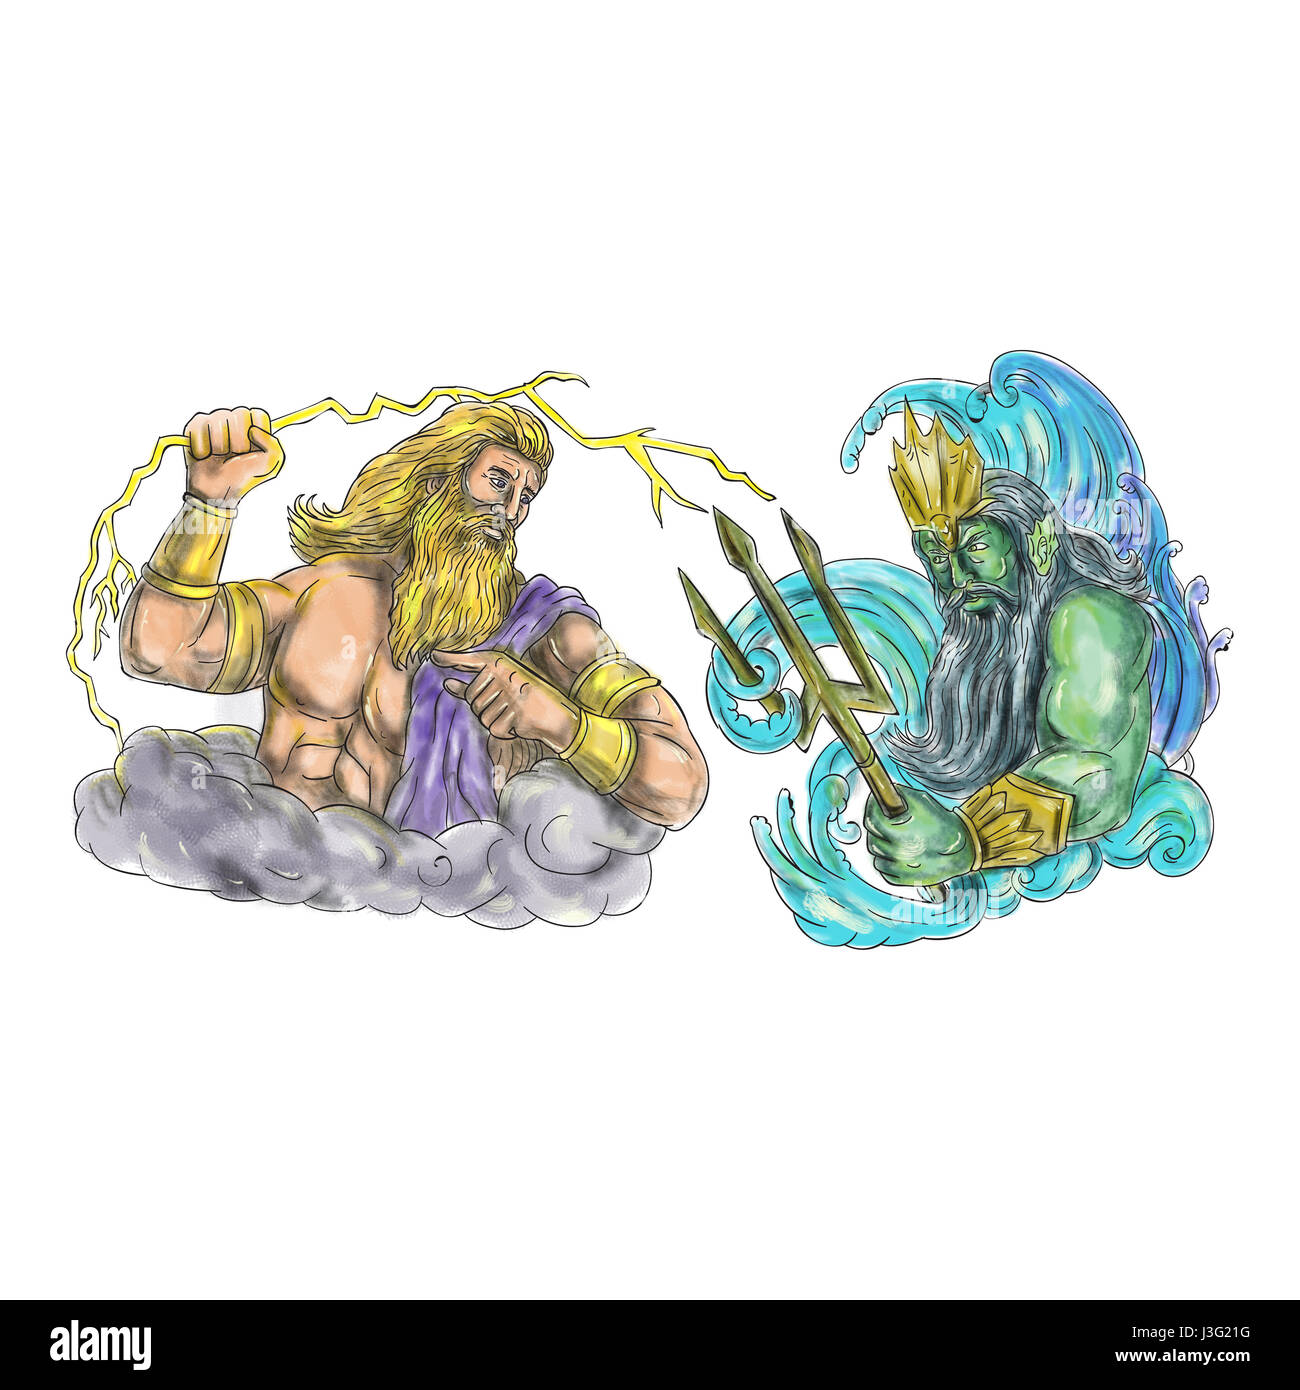 Tattoo-Stil-Abbildung des Zeus, griechischer Gott des Himmels und Herrscher der Olympischen Götter schwingt, hält eine Blitz Blitz gegen Poseidon holdin Stockfoto